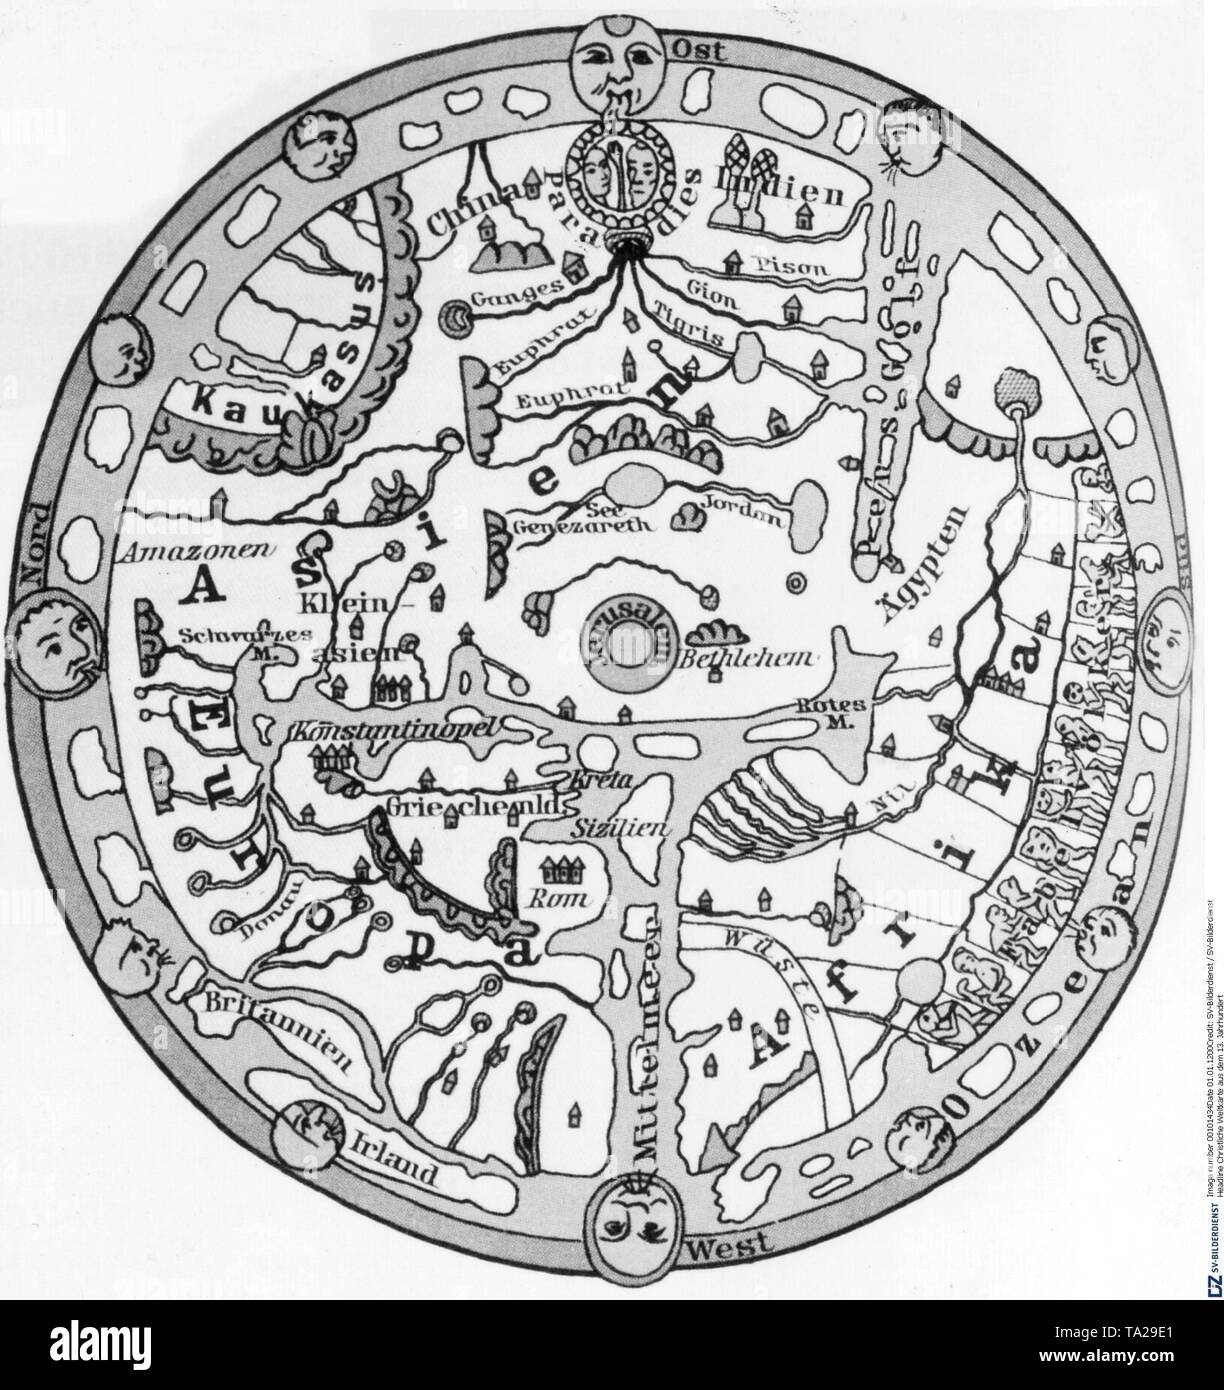 Ilustración de la Tierra como un disco plano en un mapa del mundo cristiano del siglo XIII. Foto de stock